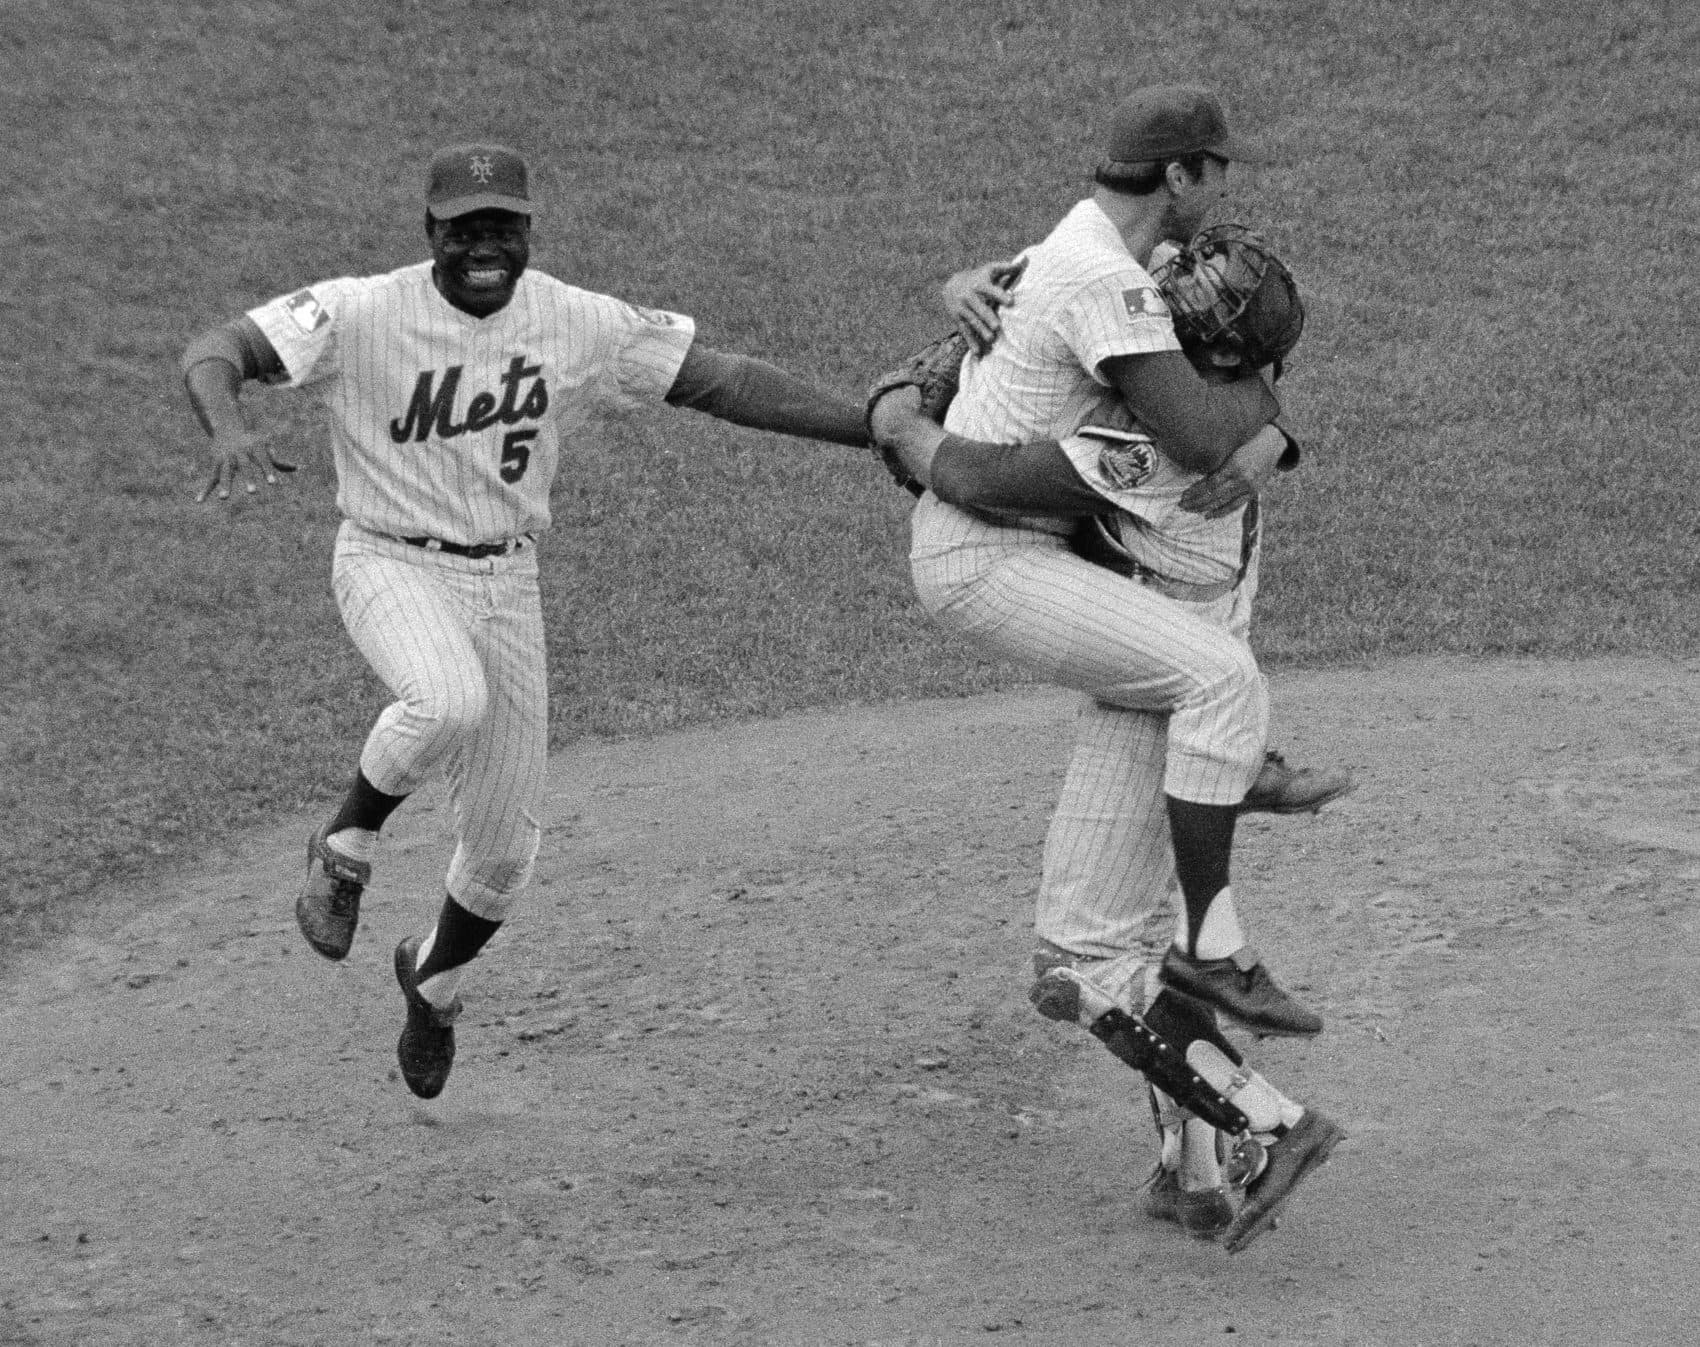 1969 Miracle Mets: World Series run helped heal America 50 years ago